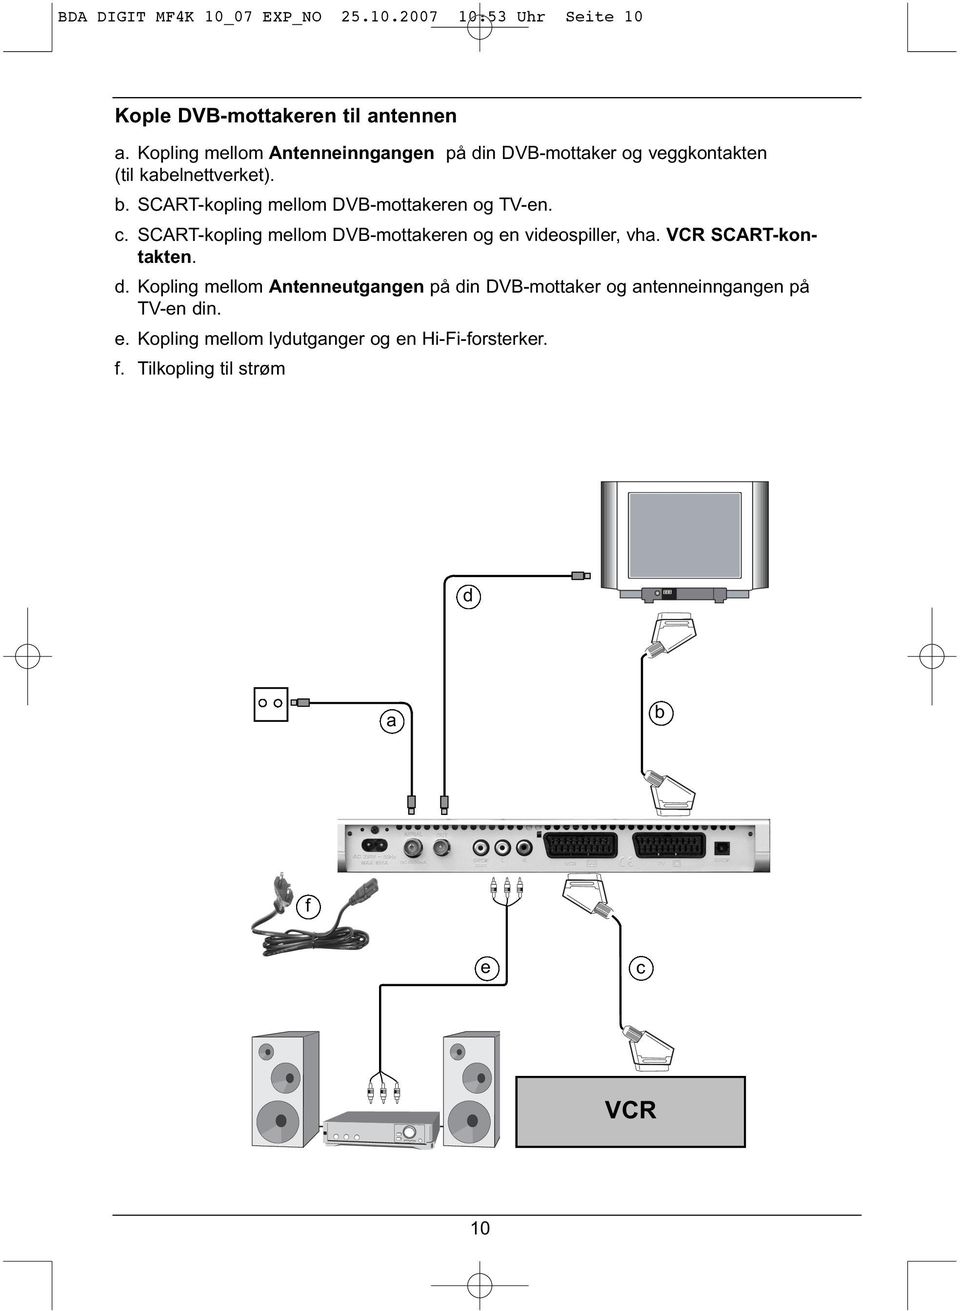 SCART-kopling mellom DVB-mottakeren og TV-en. c. SCART-kopling mellom DVB-mottakeren og en videospiller, vha.